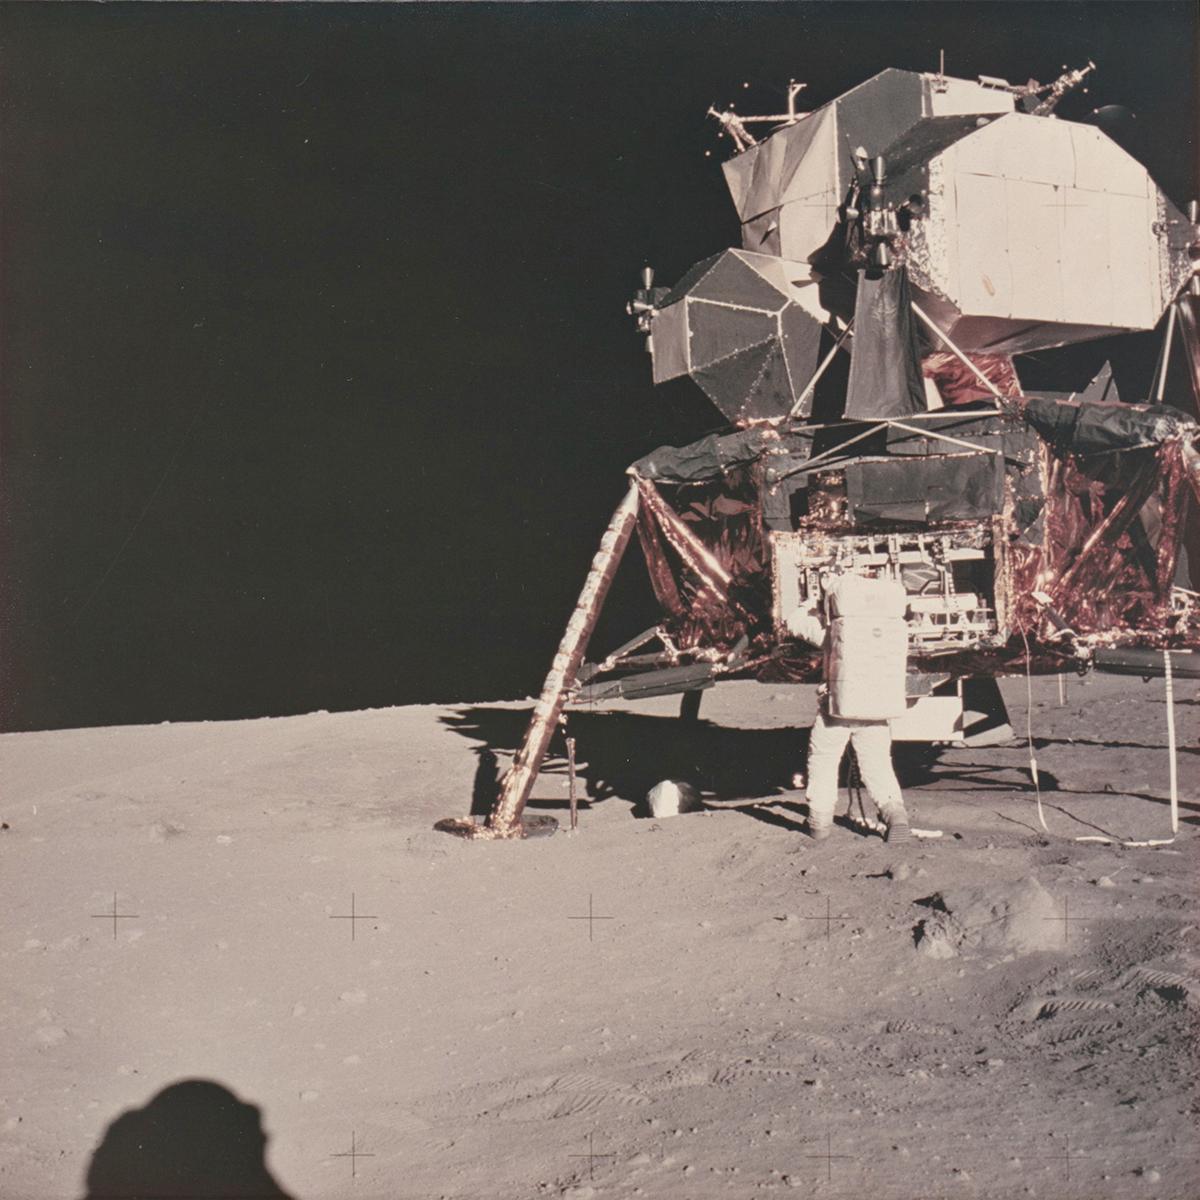 Patrick Parrish freut sich, eine unglaubliche Gruppe von Originalfotografien anbieten zu können, die von der Meisel Photochrome Corporation in Dallas um 1970, kurz nach der Apollo 11 Mission, gedruckt wurden. Meisel war der offizielle